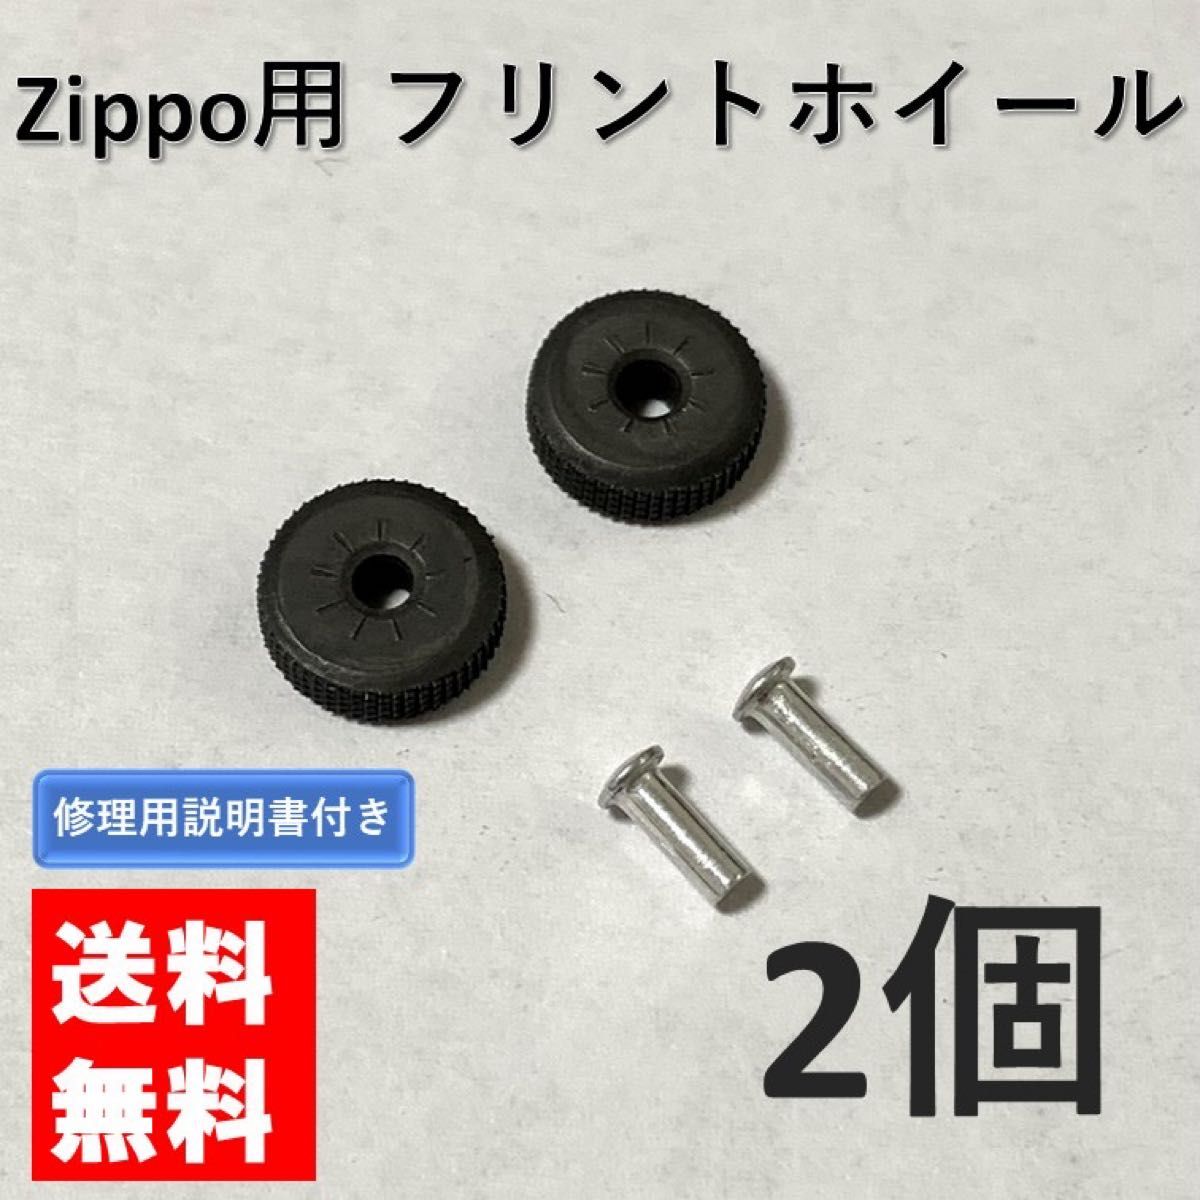 zippo フリントホイール リベット付き 2個 交換用 修理用説明書付き